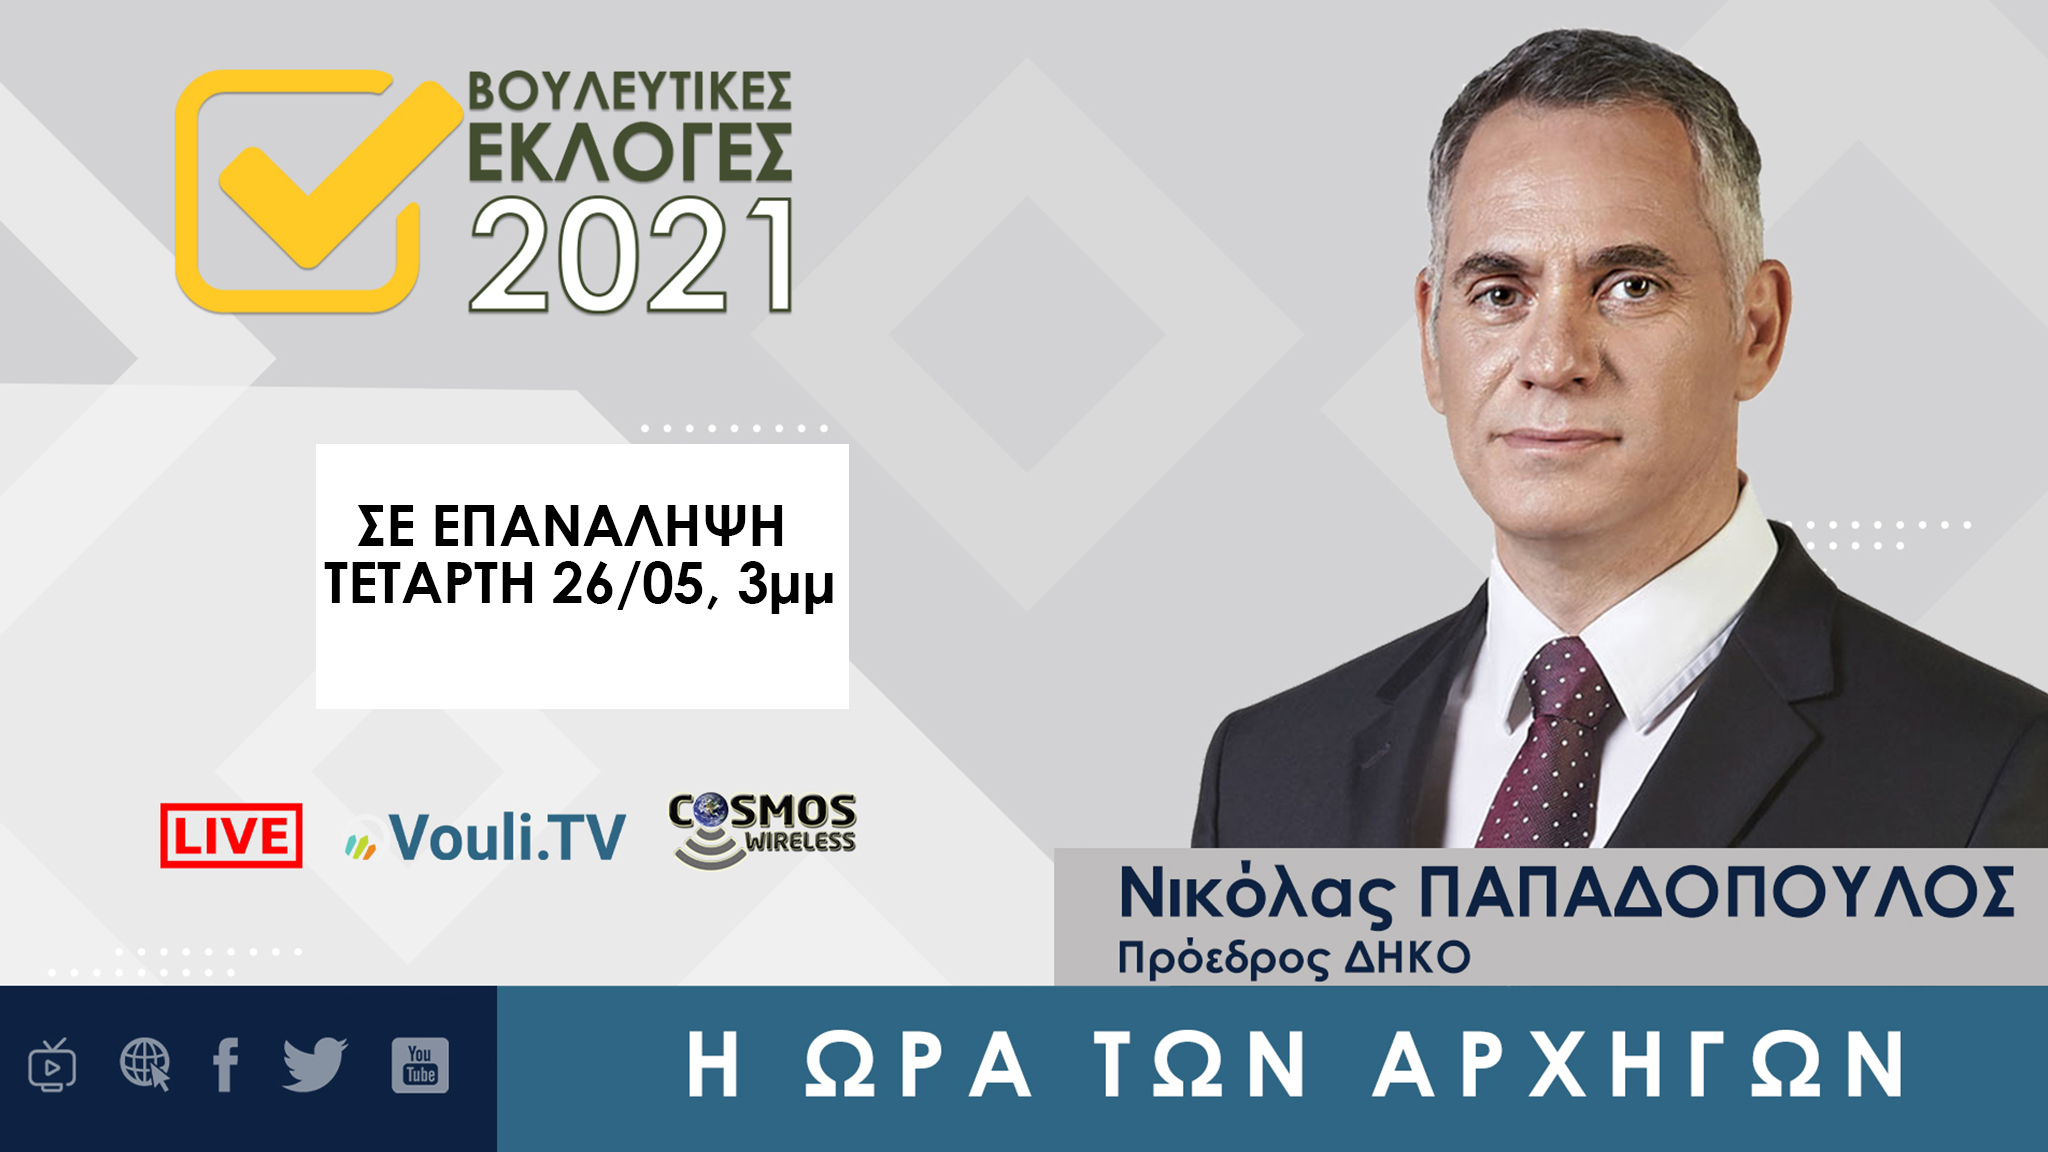 Σε επανάληψη | Εκλογές 2021 - Νικόλας Παπαδόπουλος, Τετάρτη 26/05/2021, 3μμ